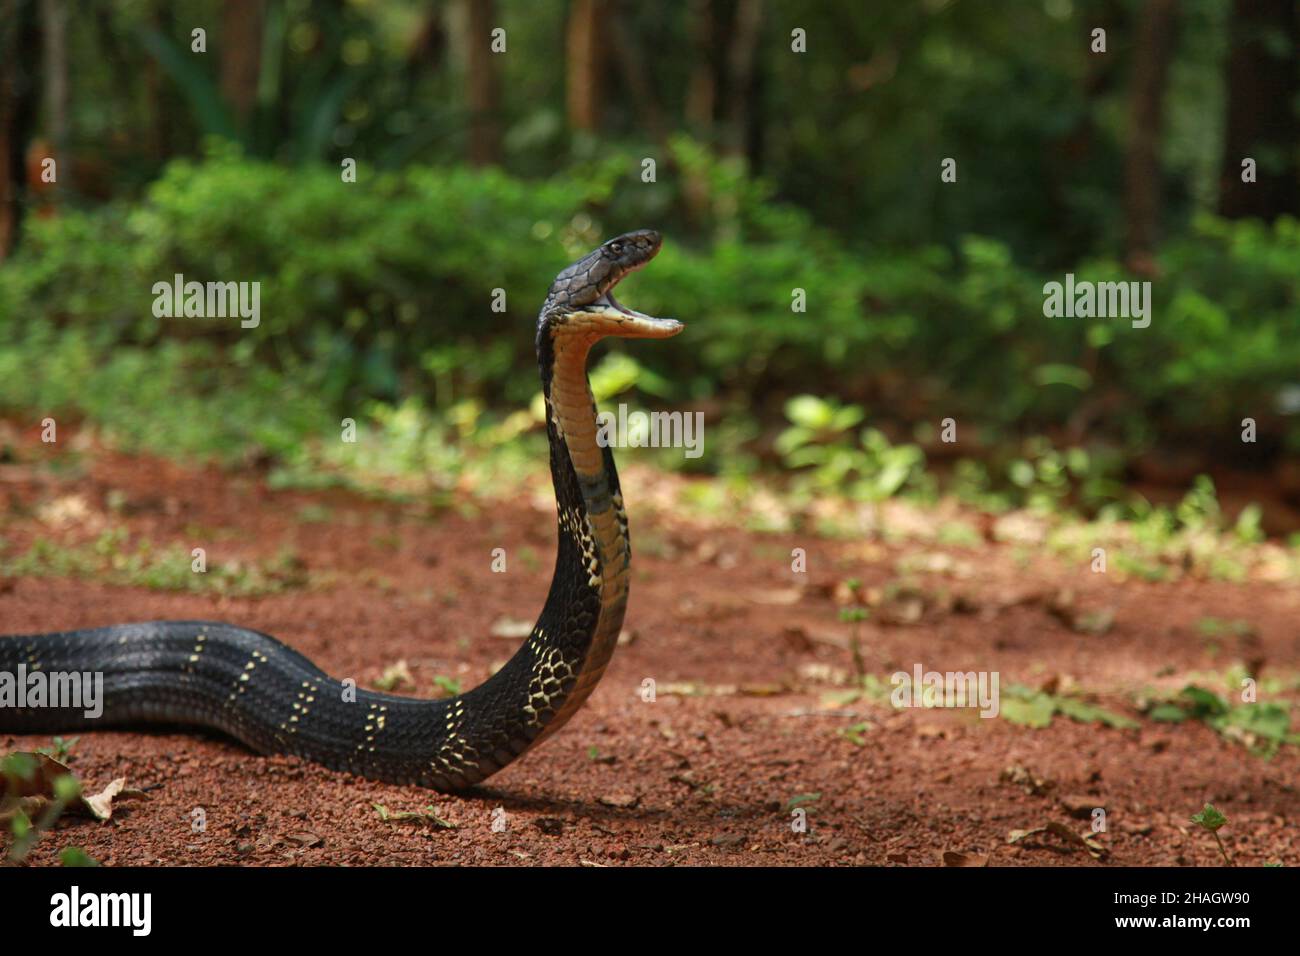 Re cobra, Ophiophagus hannah è una specie di serpente velenoso di lapidi endemici a giungle nel sud e sud-est asiatico, goa india Foto Stock